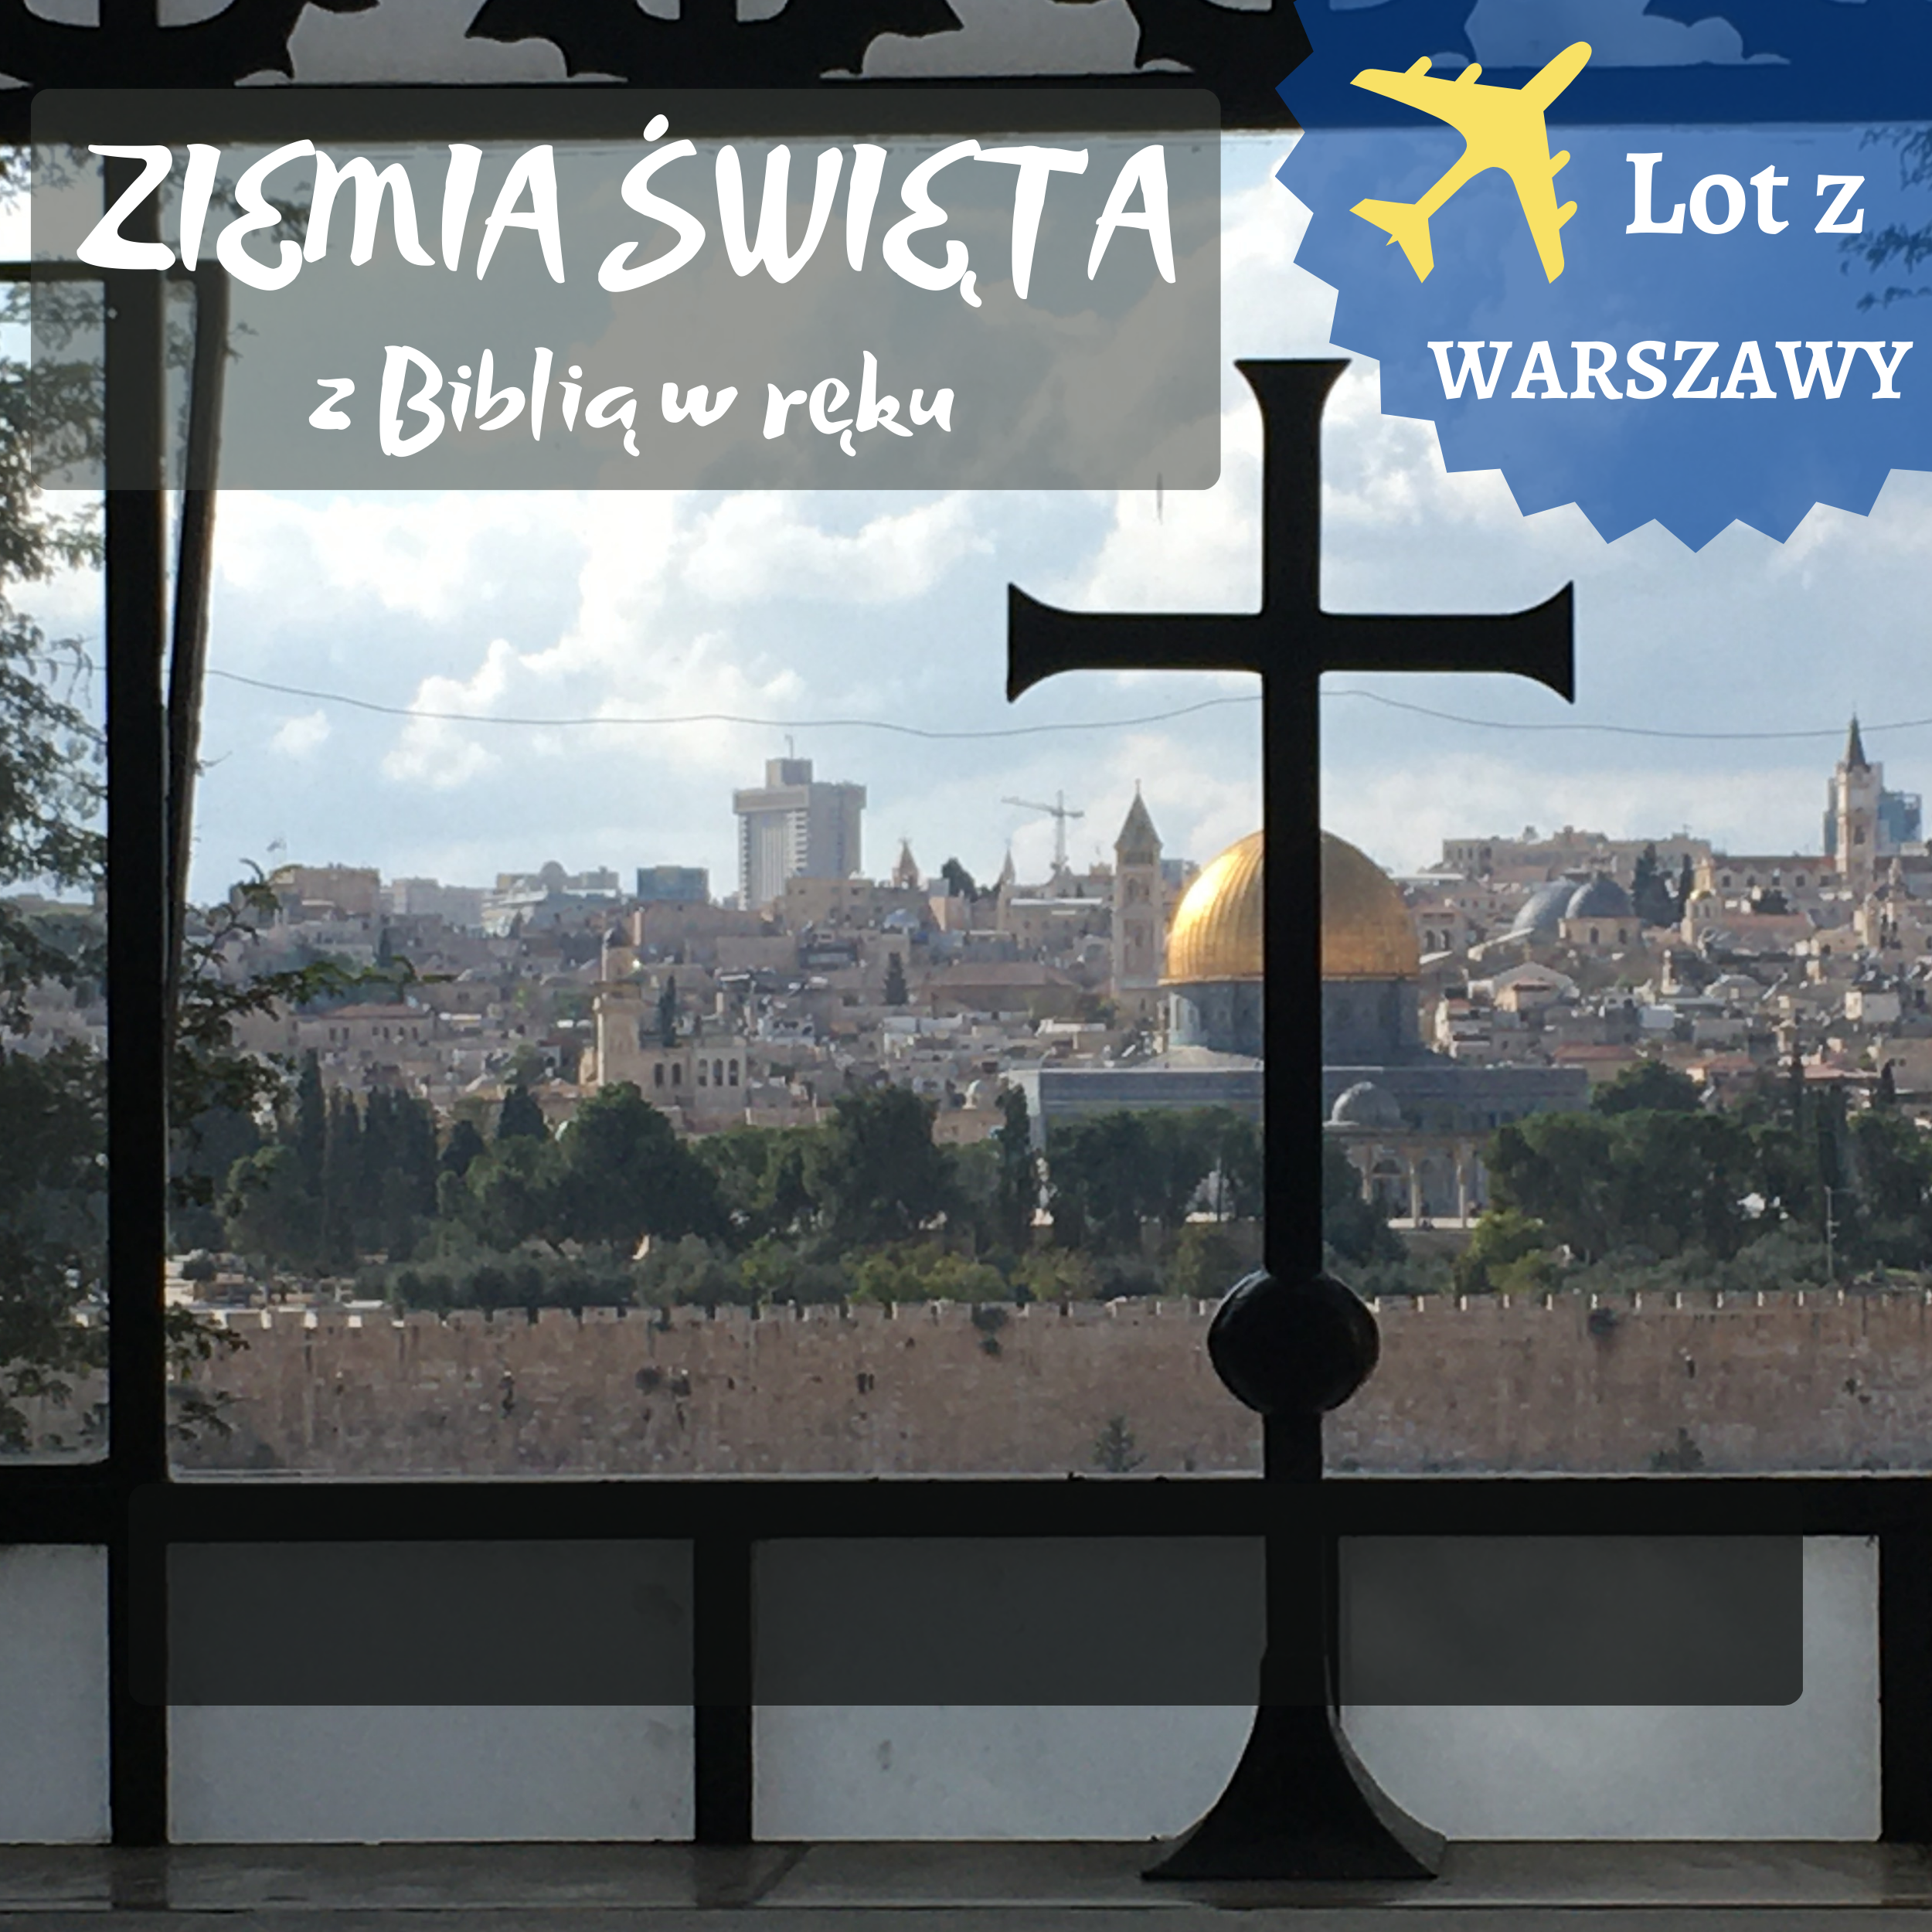 LOT z Warszawy do Izraela